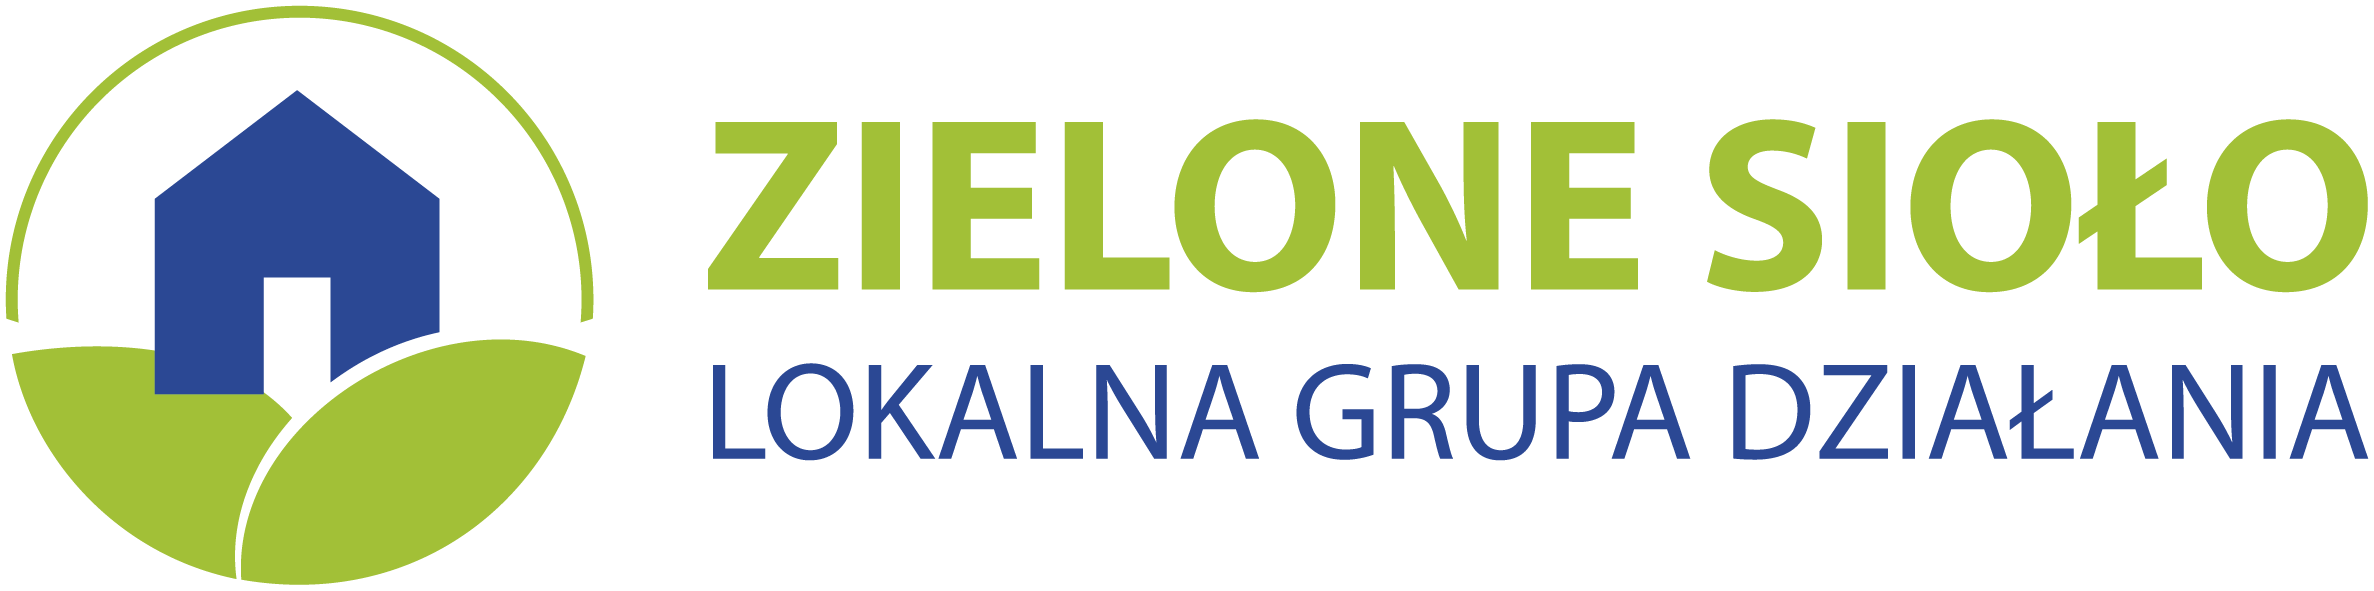 Logo strony LGD Zielone Sioło